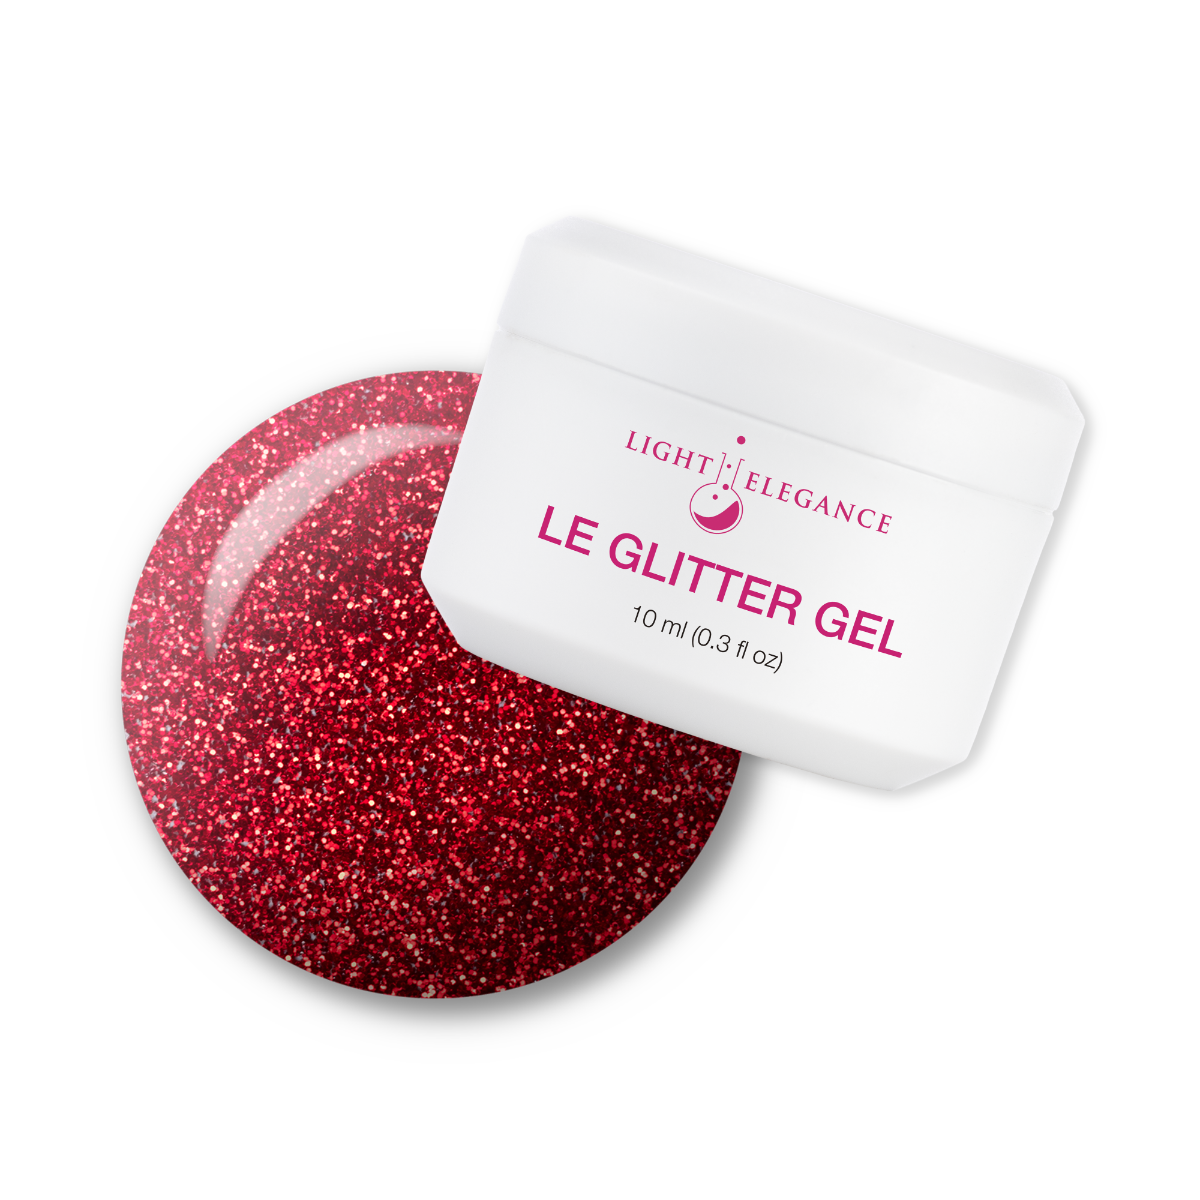 Light Elegance Glitter Gel - Be Mine :: New Packaging